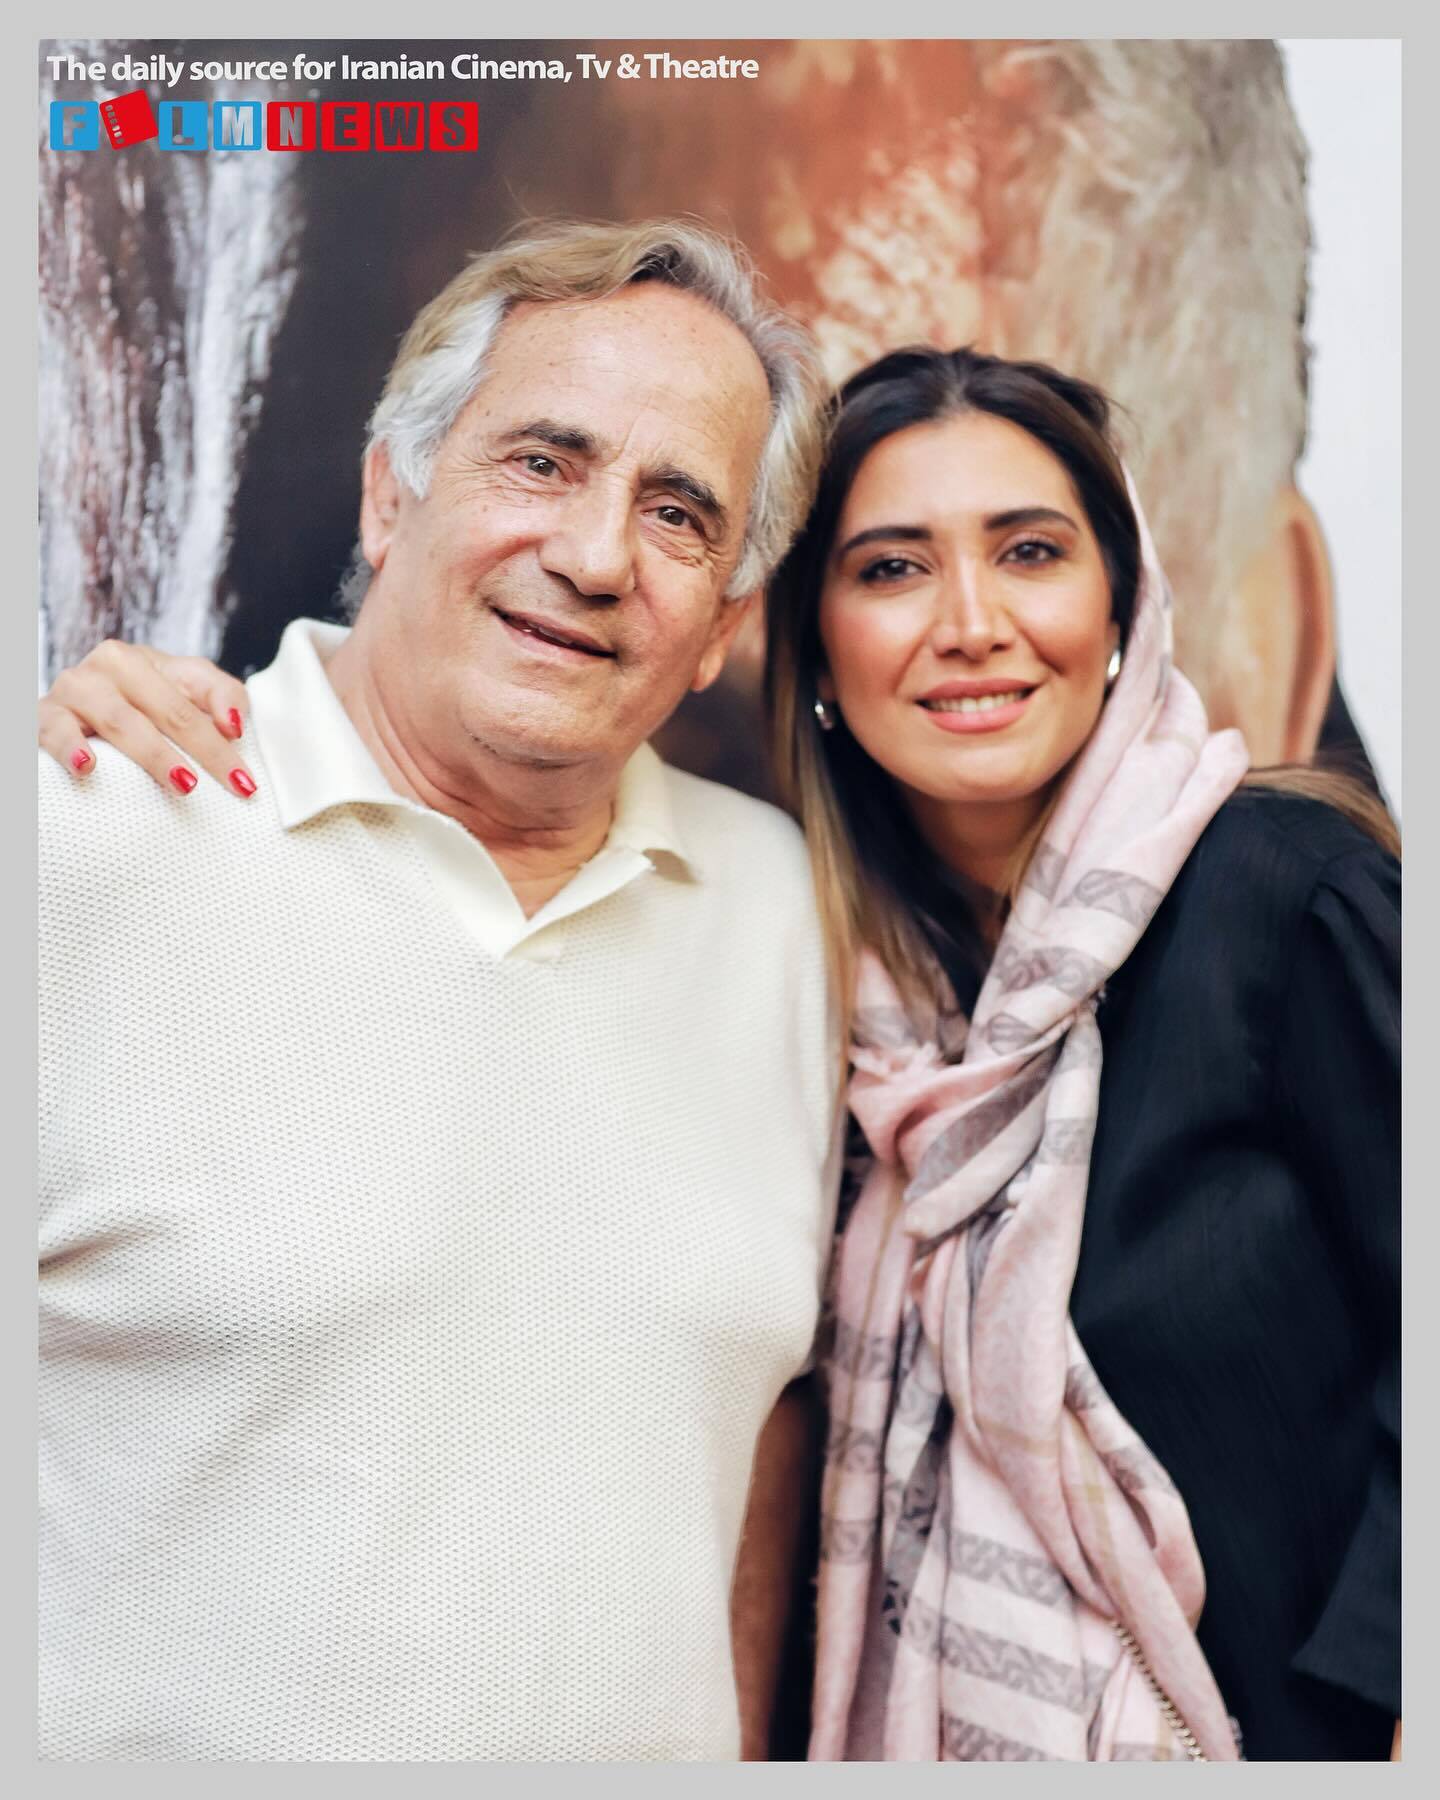 پدر و دختر سینمای ایران در اکران یک فیلم